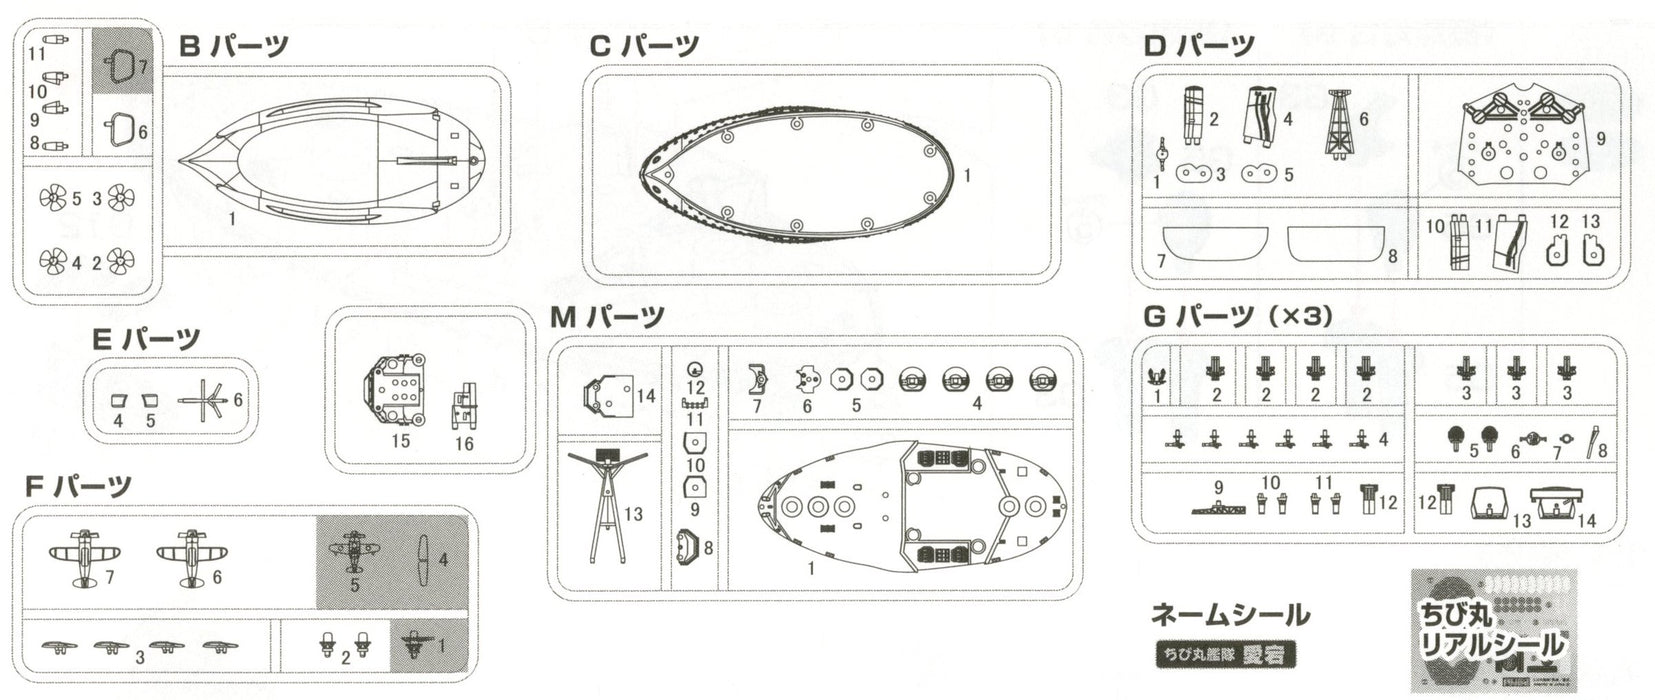 Modèle Fujimi Chibimaru Fleet Series No.24 Atago Longueur totale Environ 11 cm Modèle en plastique à code couleur sans échelle Chibimaru 24